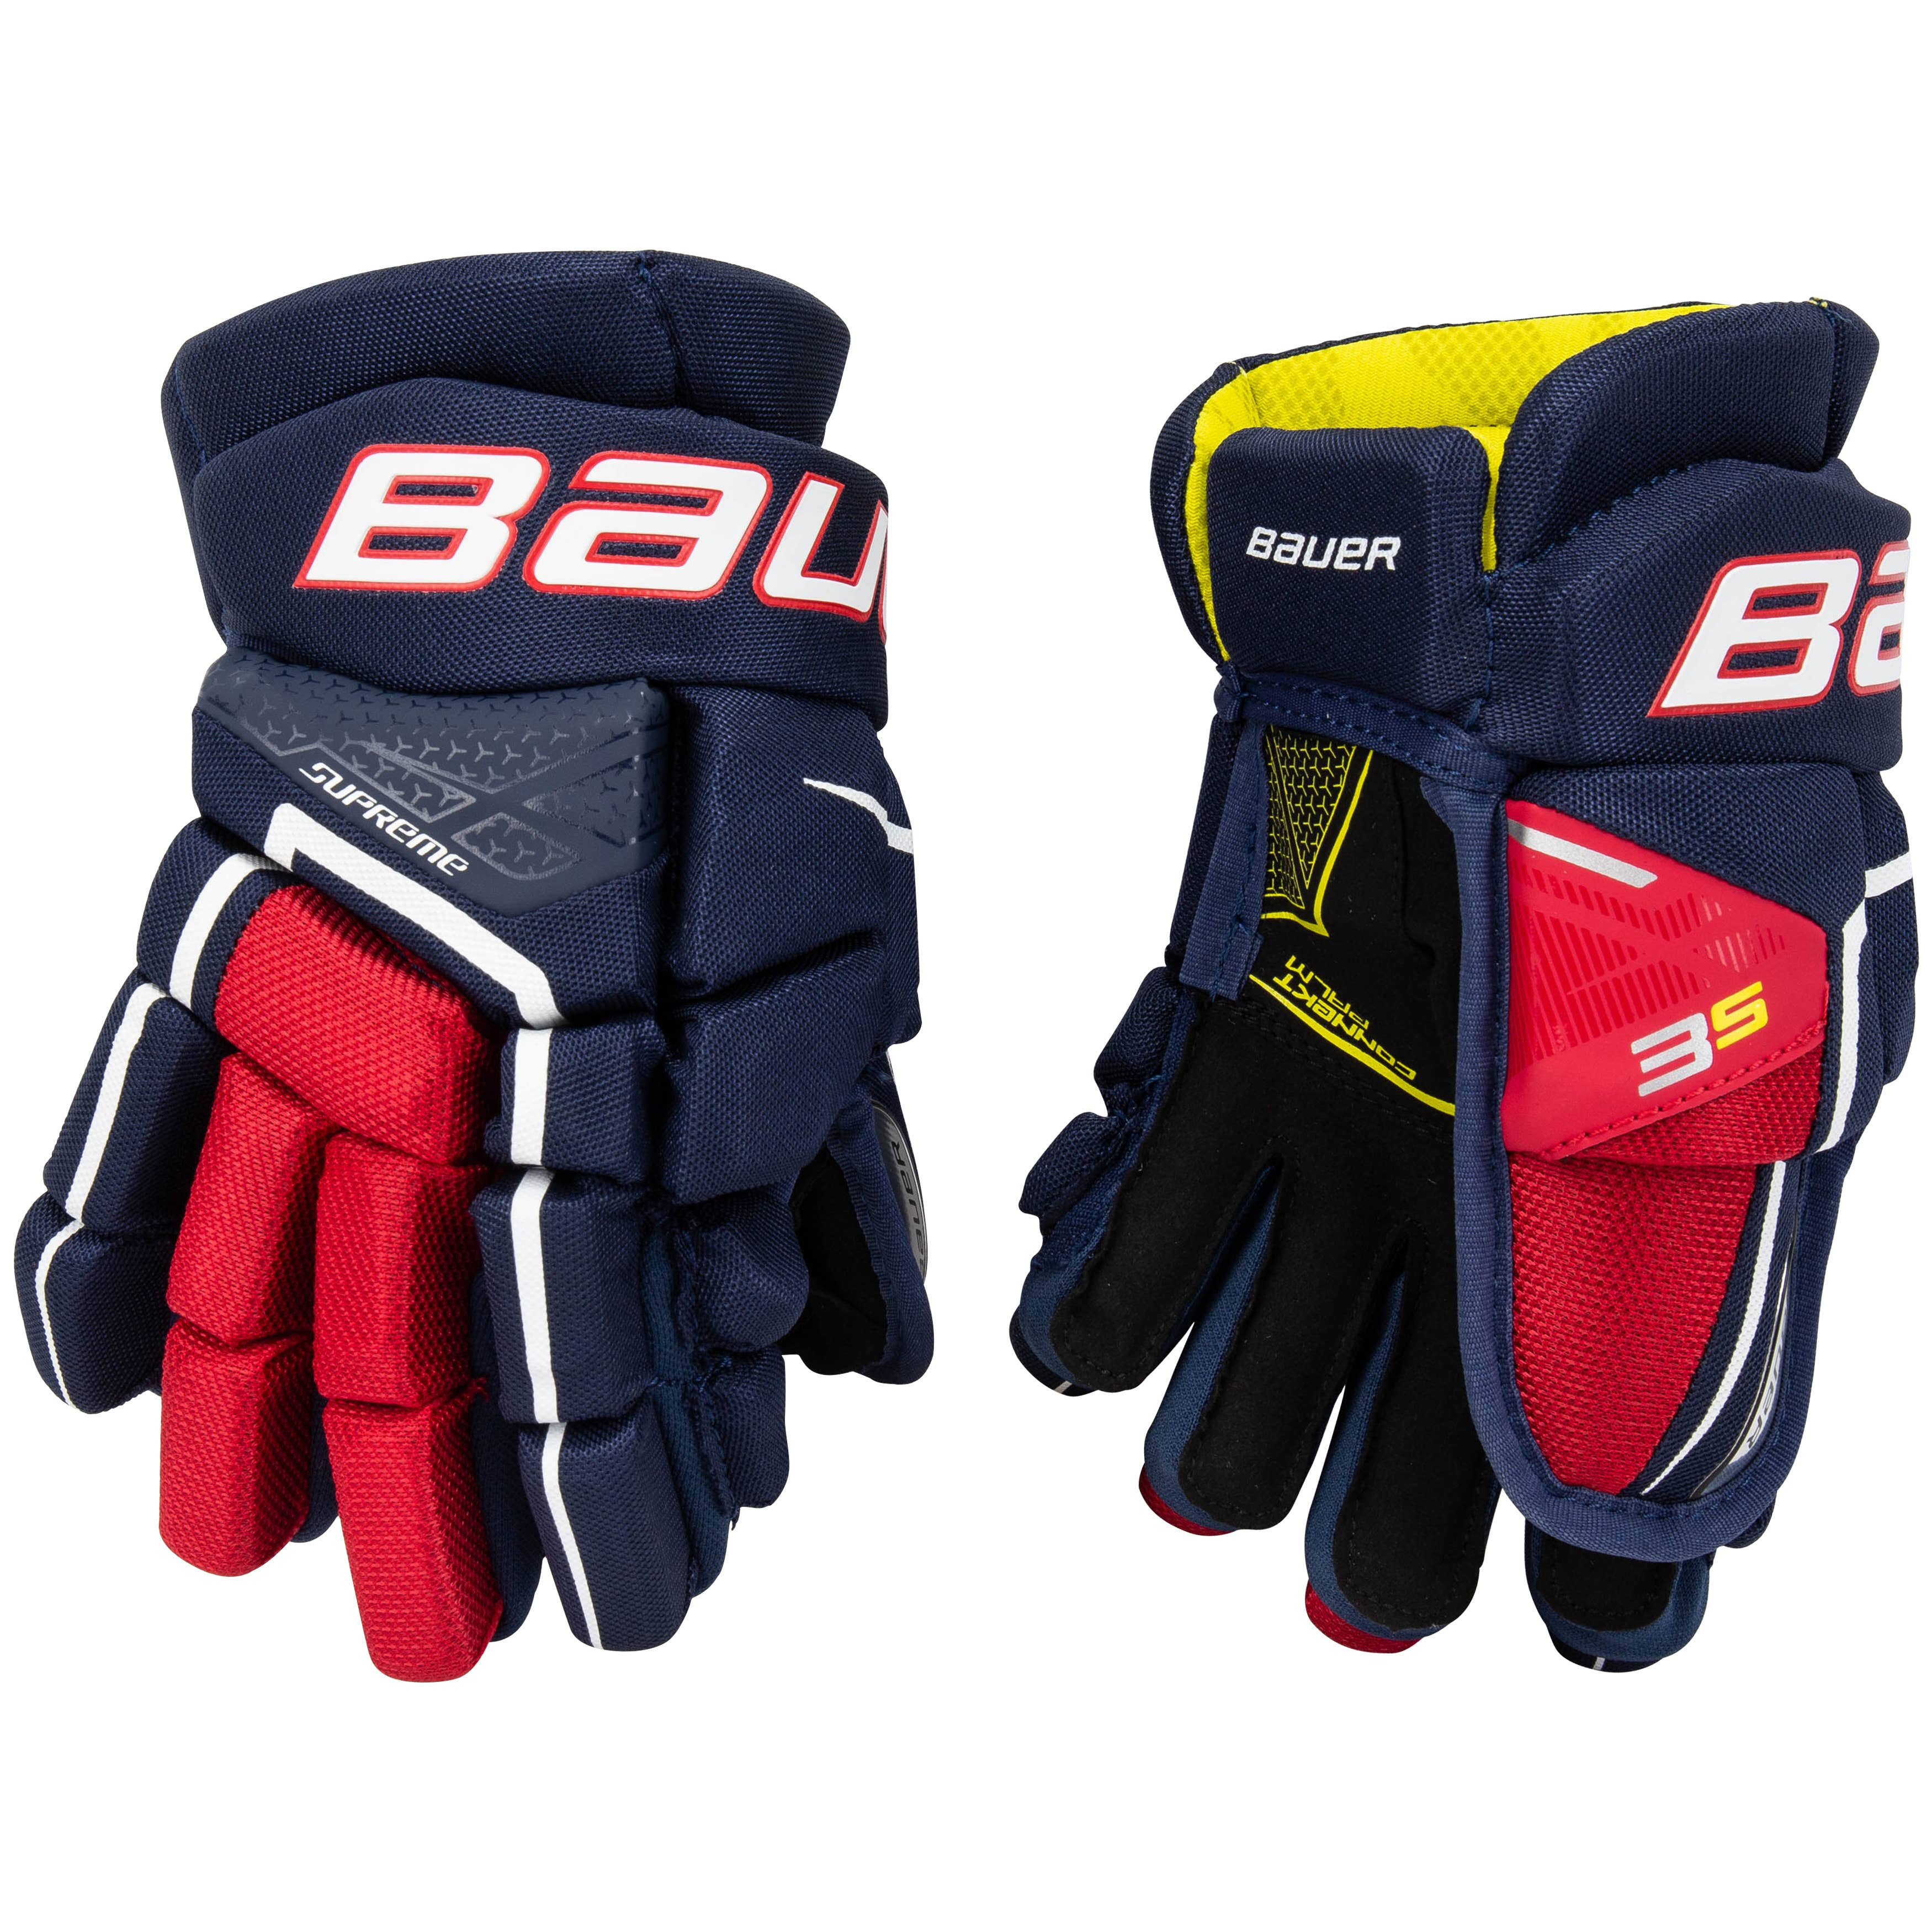 Bauer Supreme 3S Hockey Gloves, Junior, Navy/Red/White